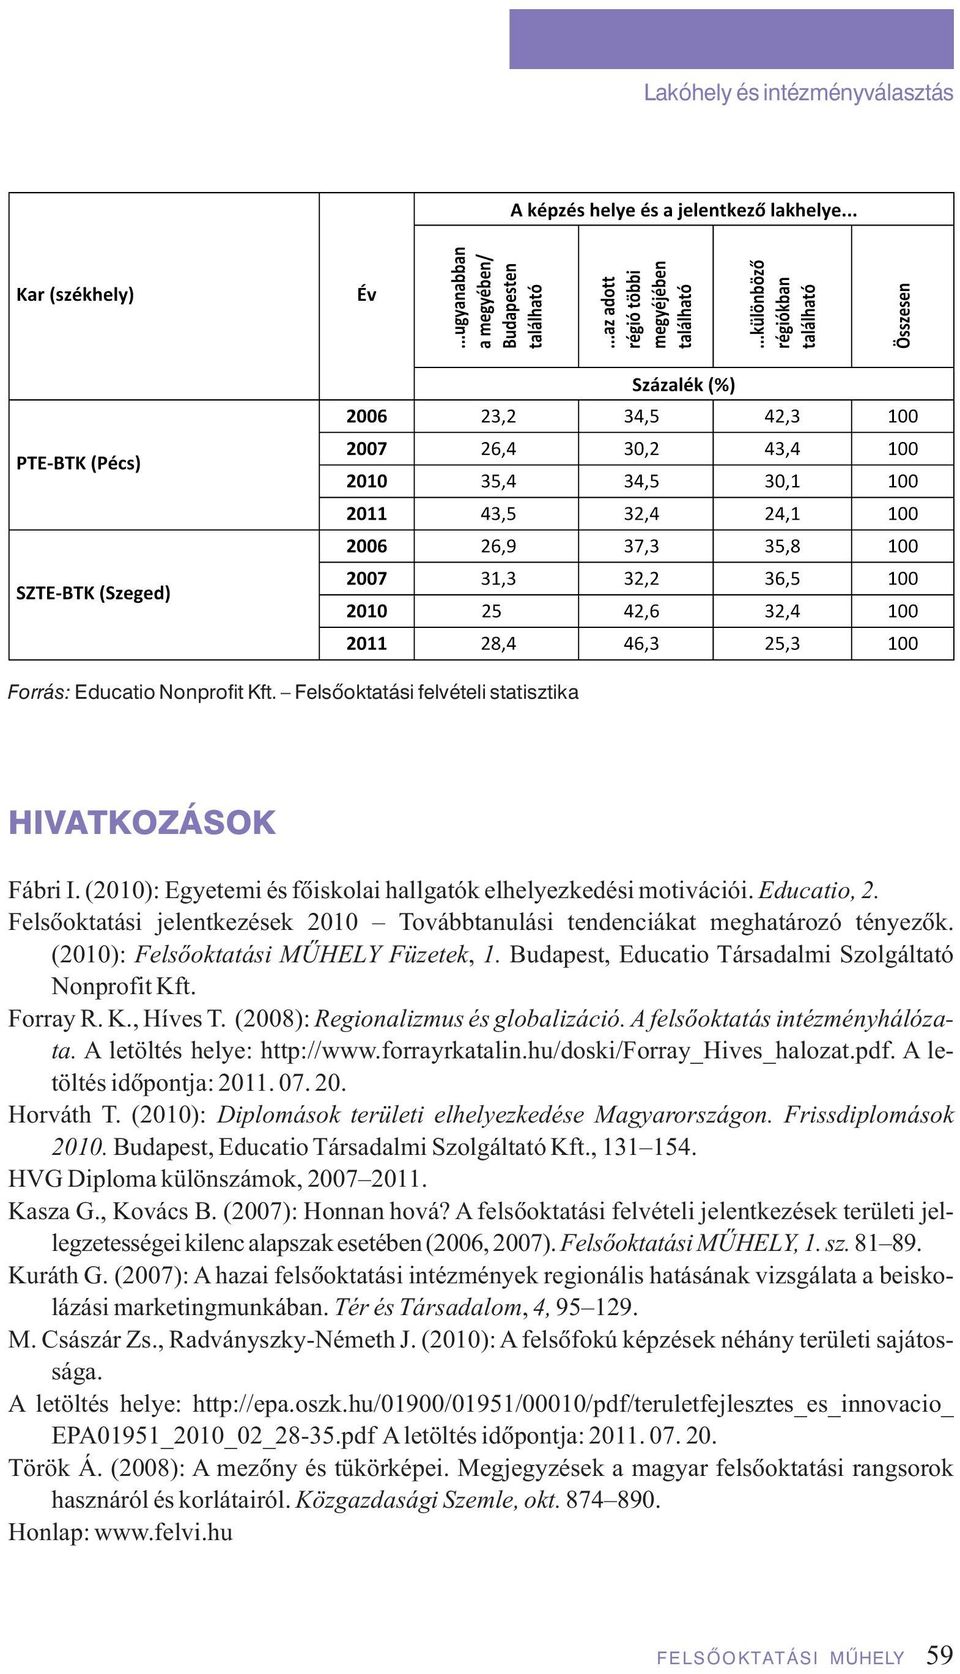 (2008): Regionalizmus és globalizáció. A felsôoktatás intézményhálózata. A letöltés helye: http://www.forrayrkatalin.hu/doski/forray_hives_halozat.pdf. A letöltés idôpontja: 2011. 07. 20. Horváth T.